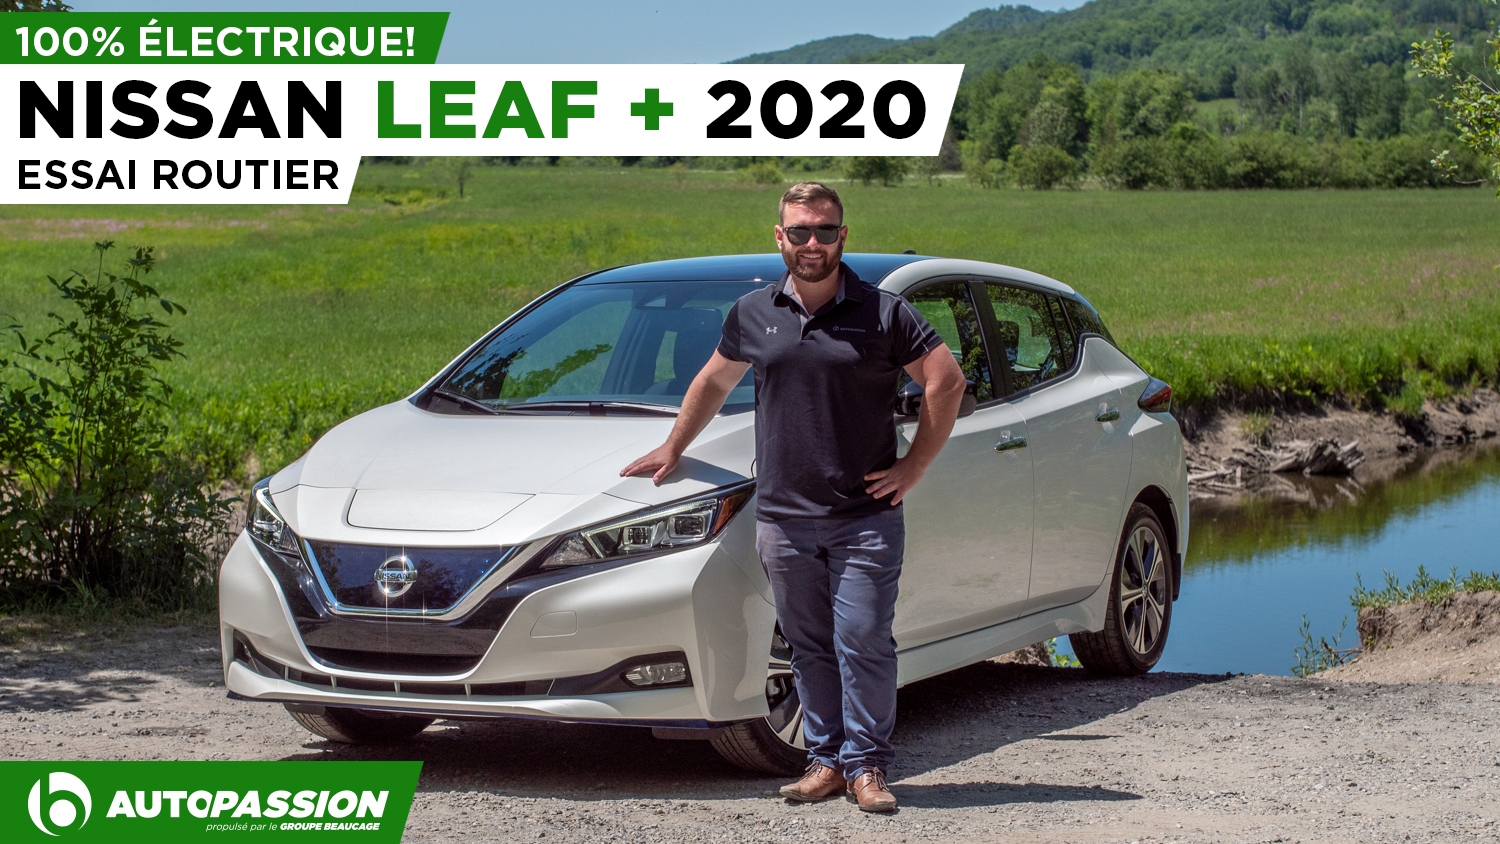 Nissan Leaf + : Plus d’autonomie, de puissance et de plaisir!